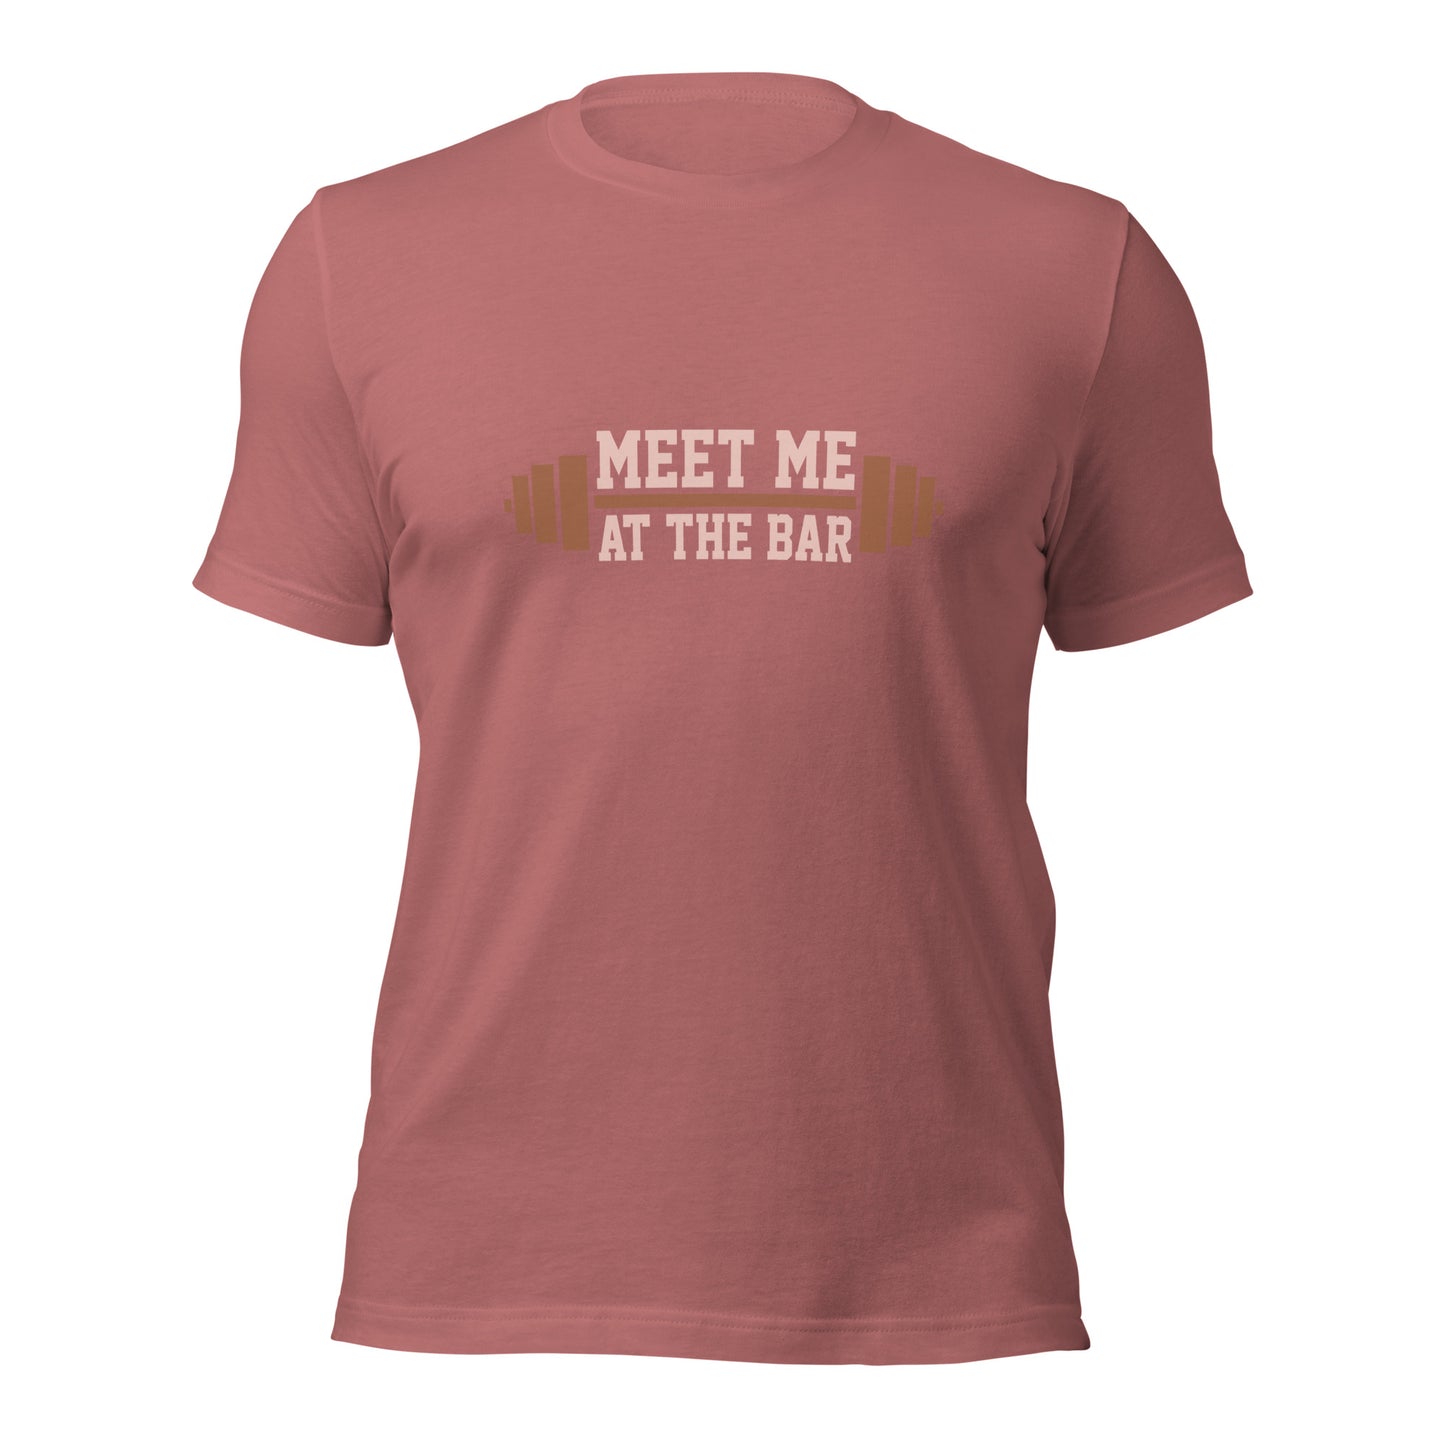 Meet me at the Bar T-shirt